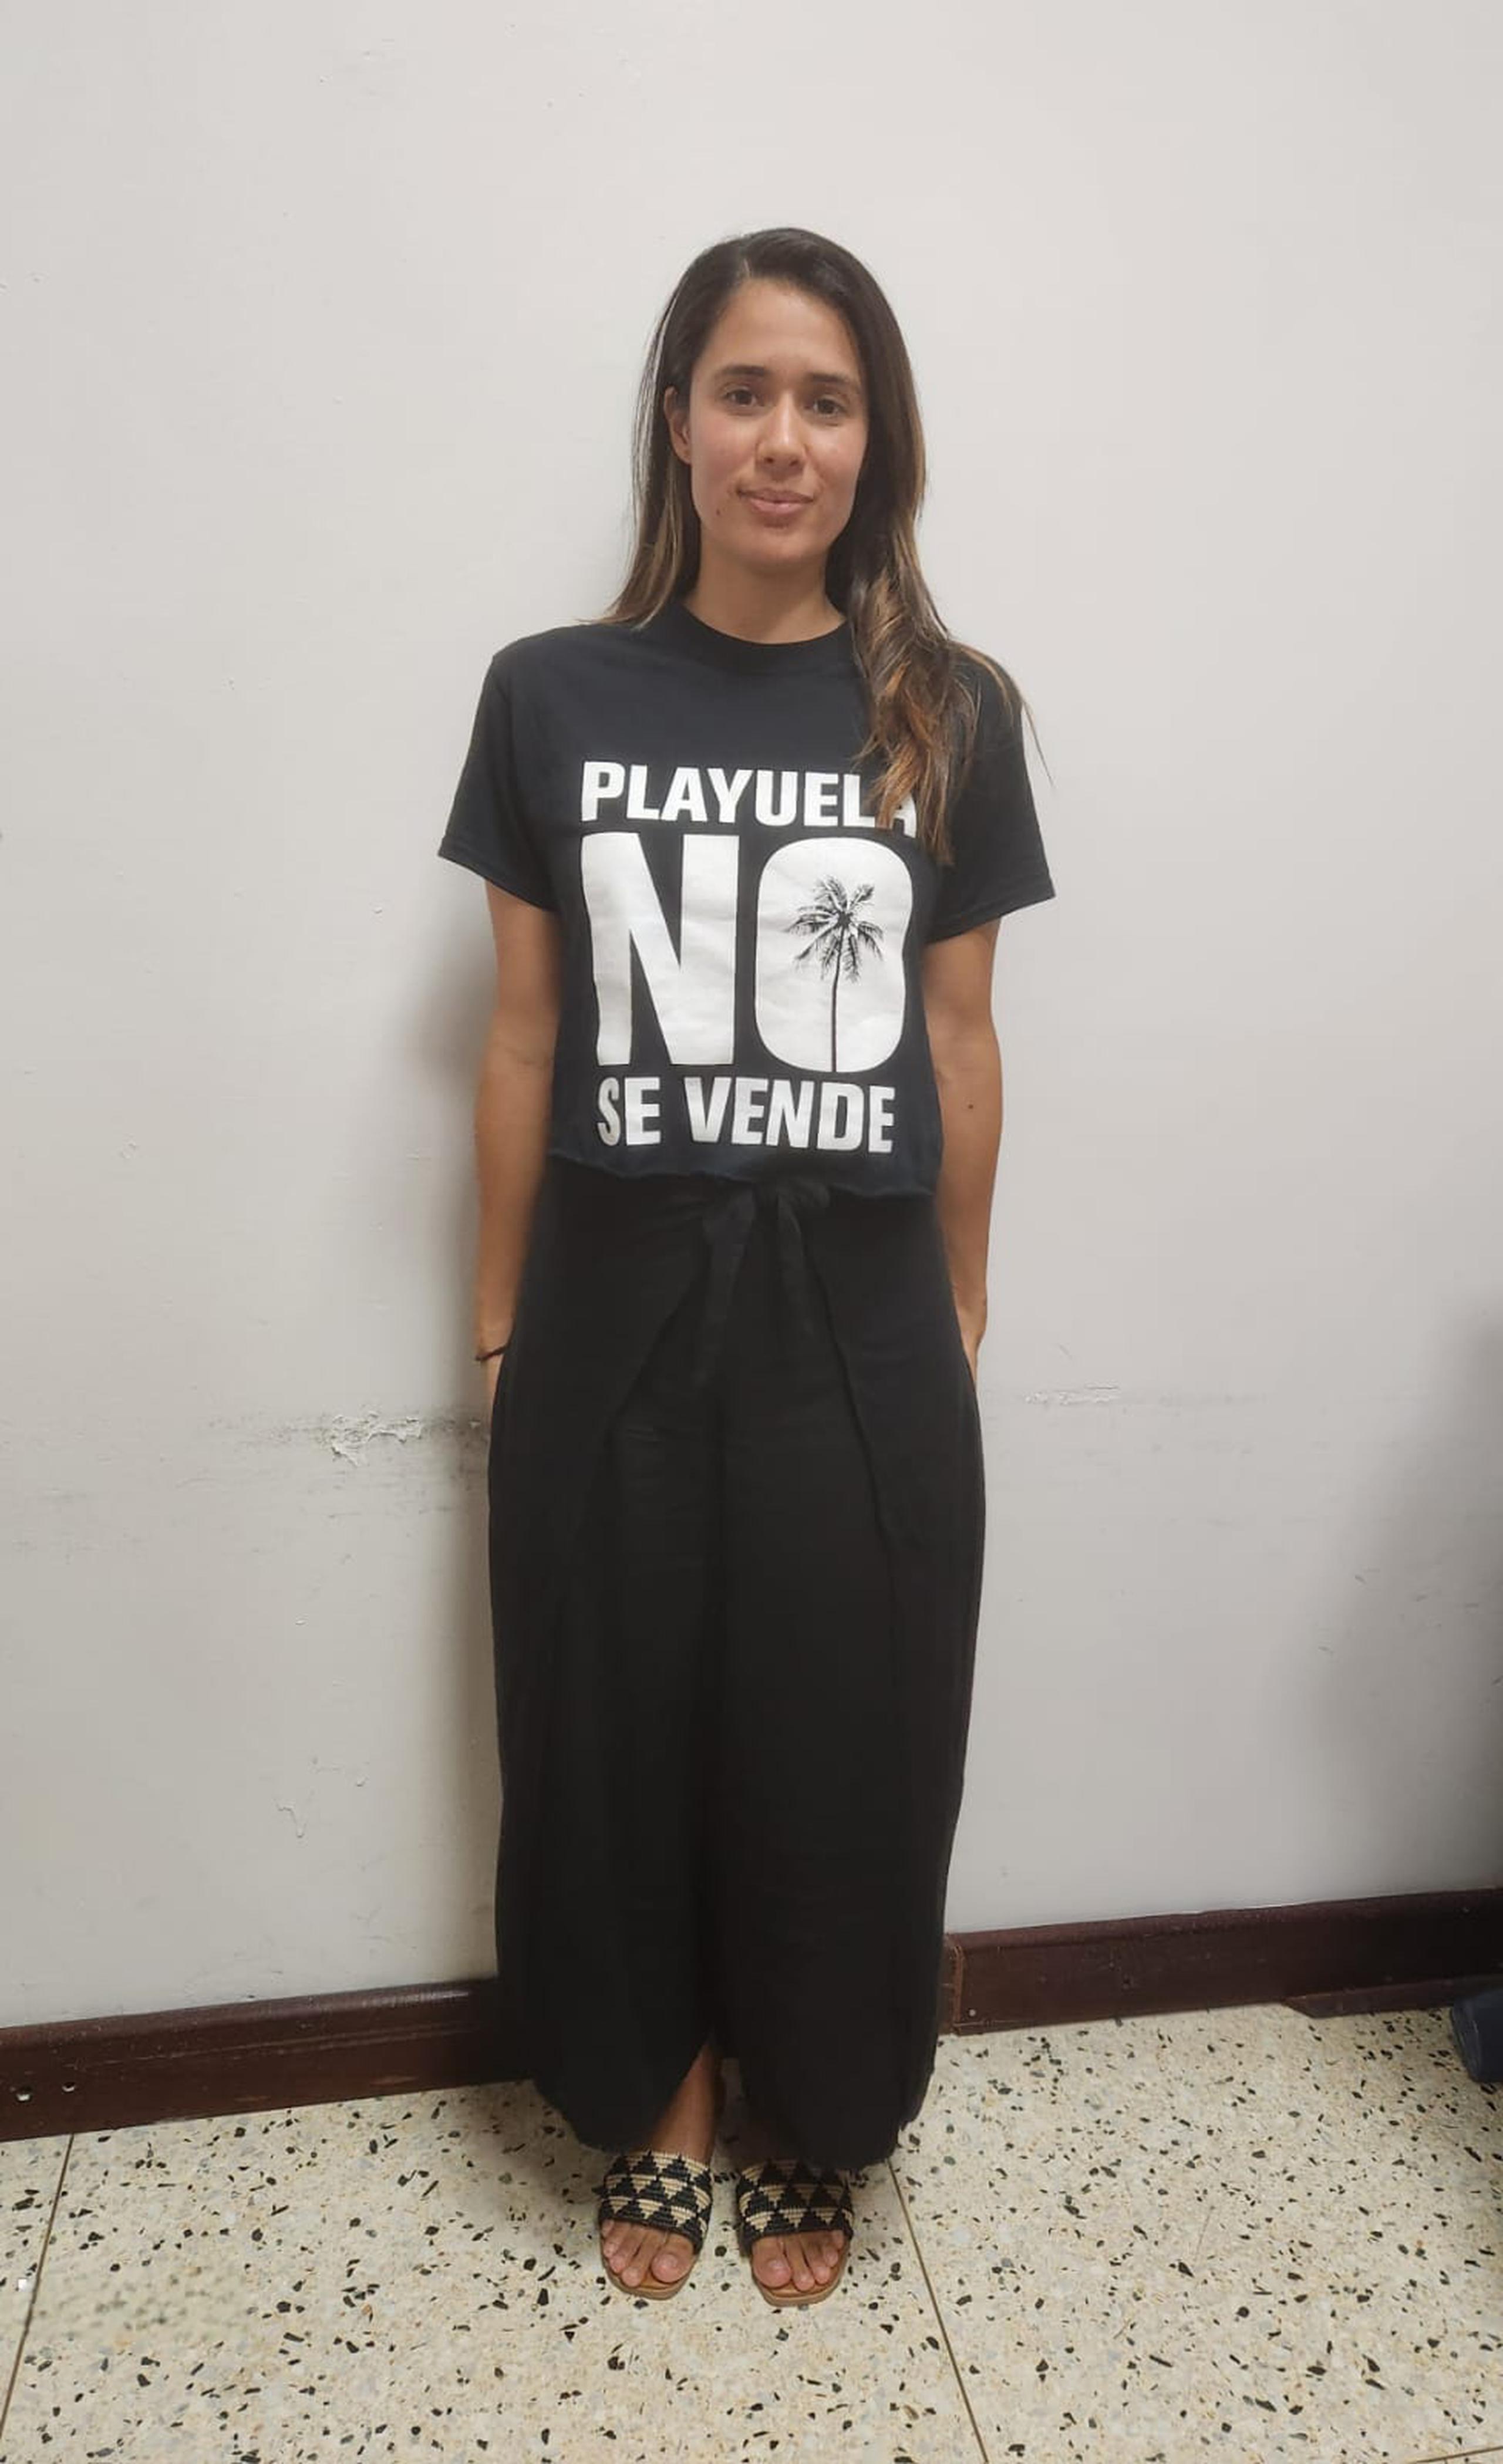 La portavoz del grupo Salvemos a Playuela, Suzette Quirós, denunció también que personal de seguridad no le permitió entrar al Capitolio con una camiseta negra con el mensaje “Playuela no se vende”.